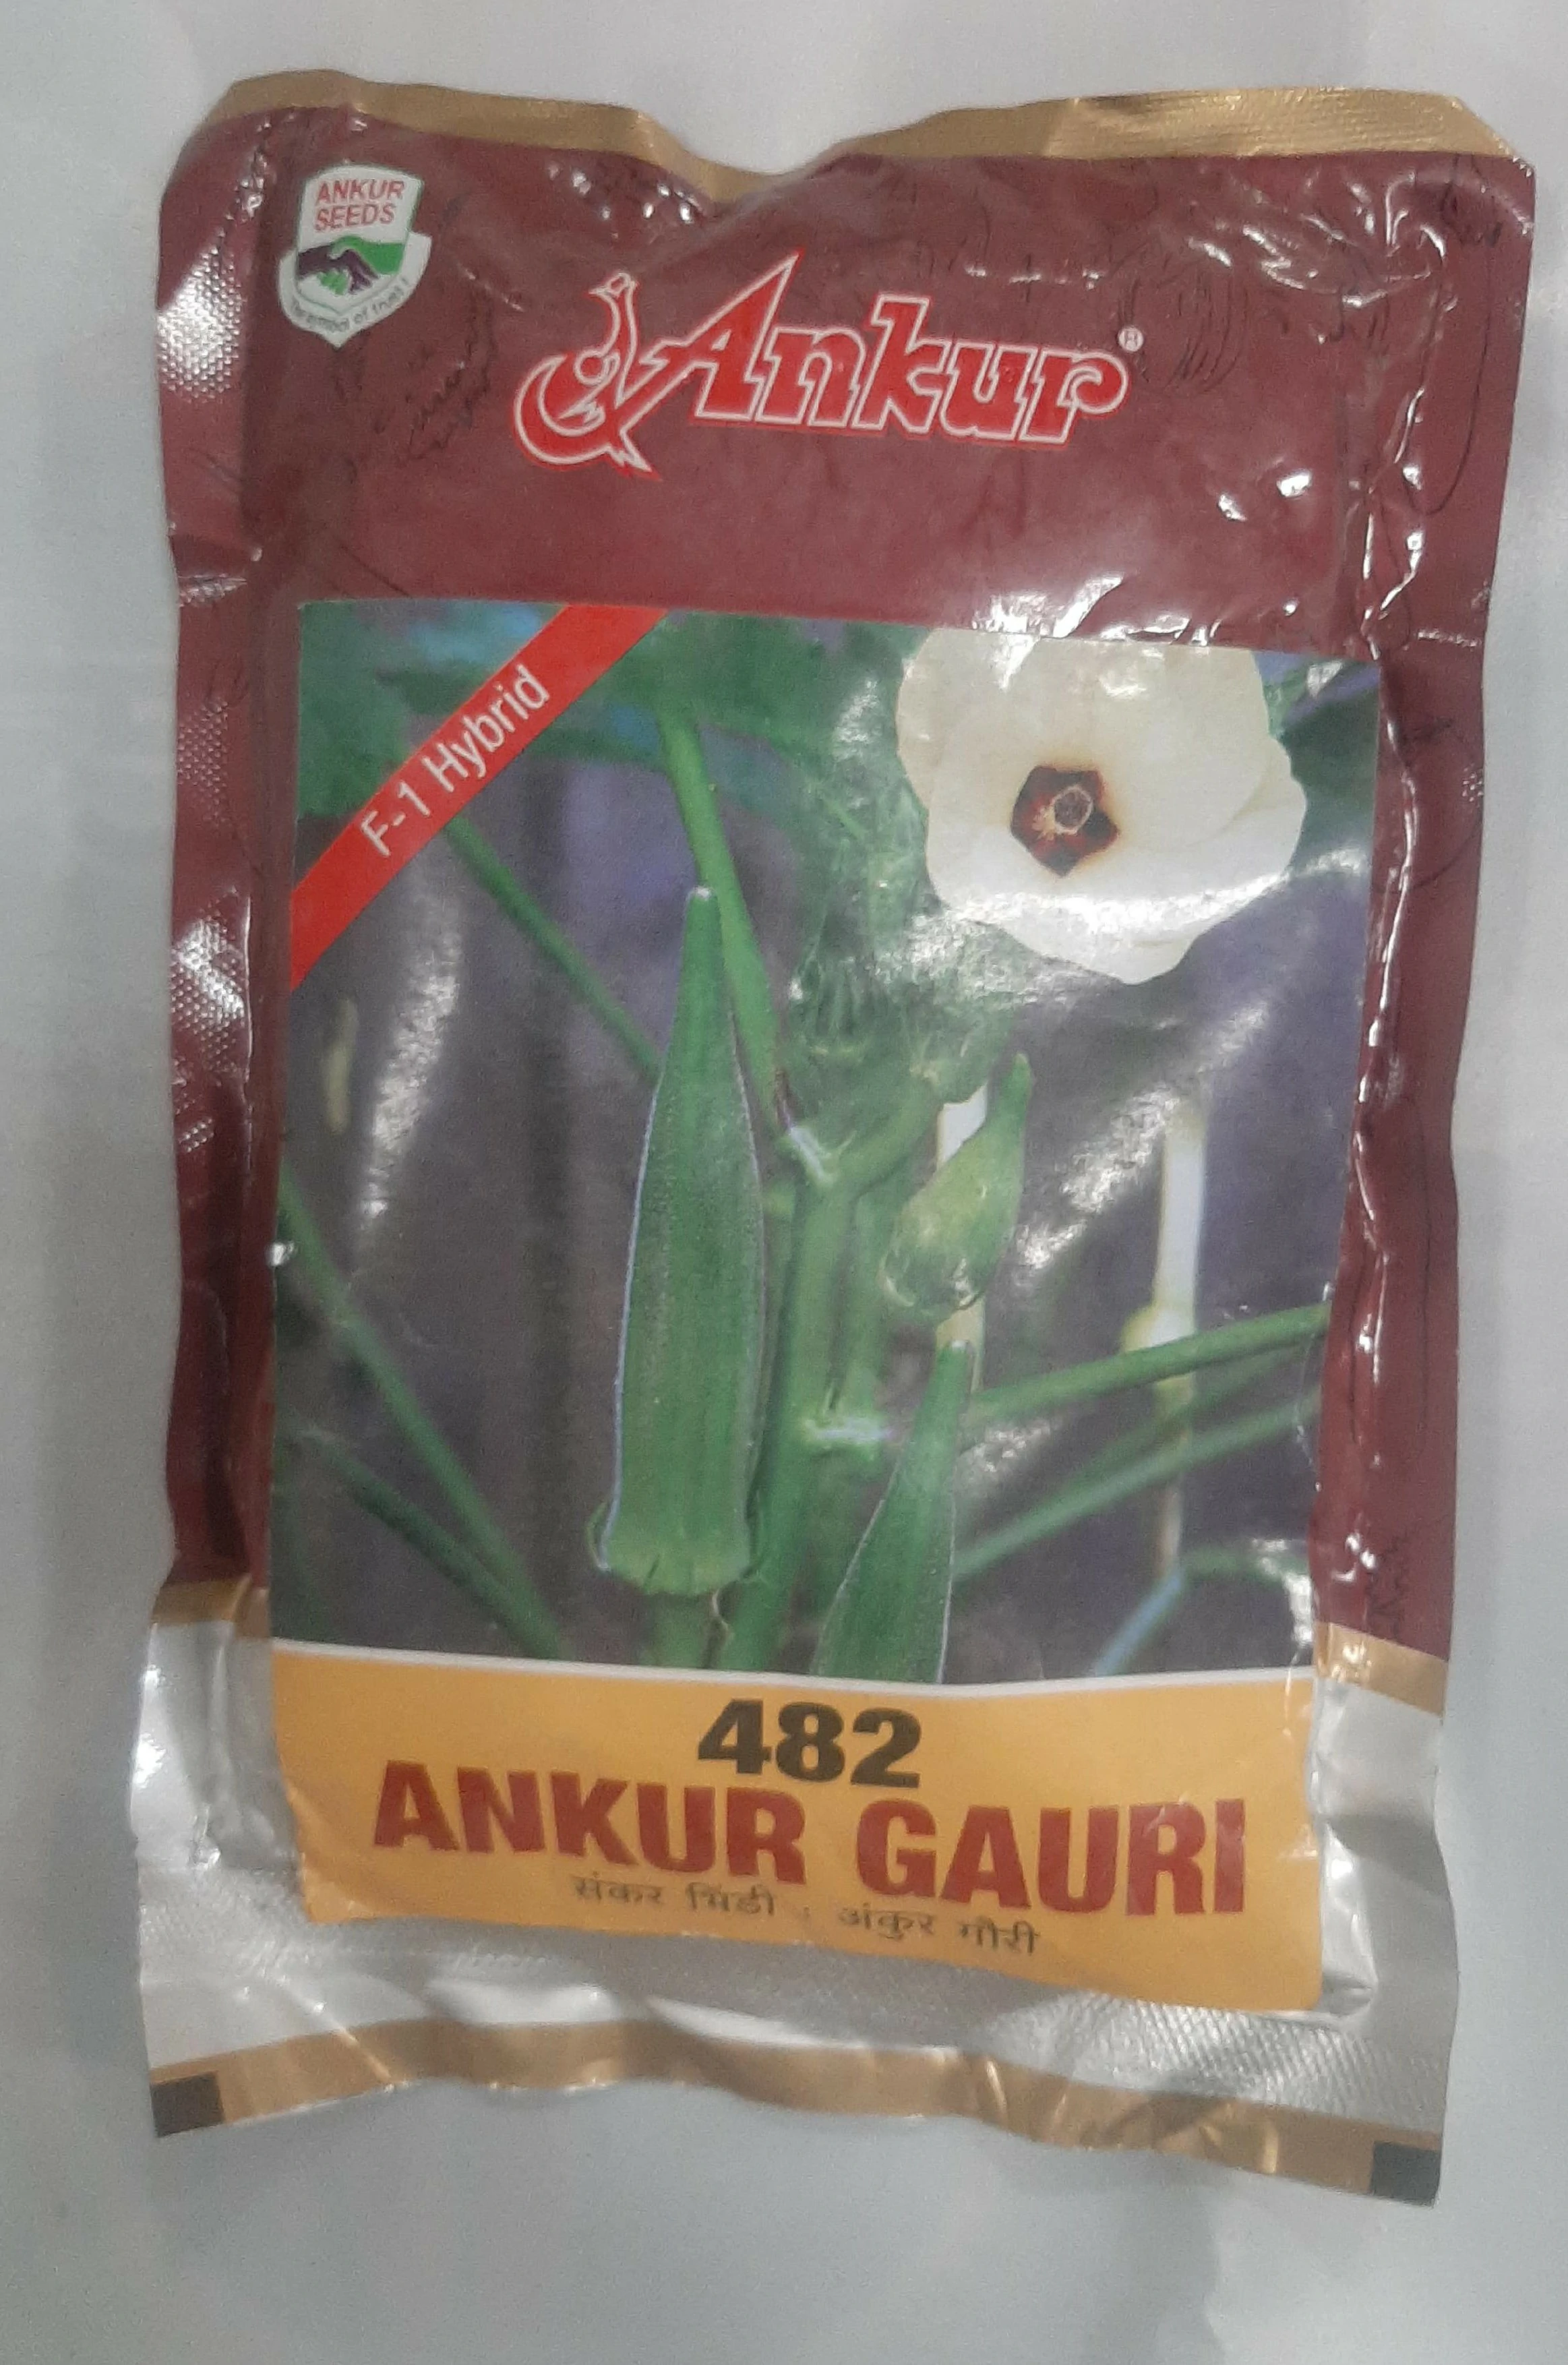 Bhindi 482 Gauri Ankur